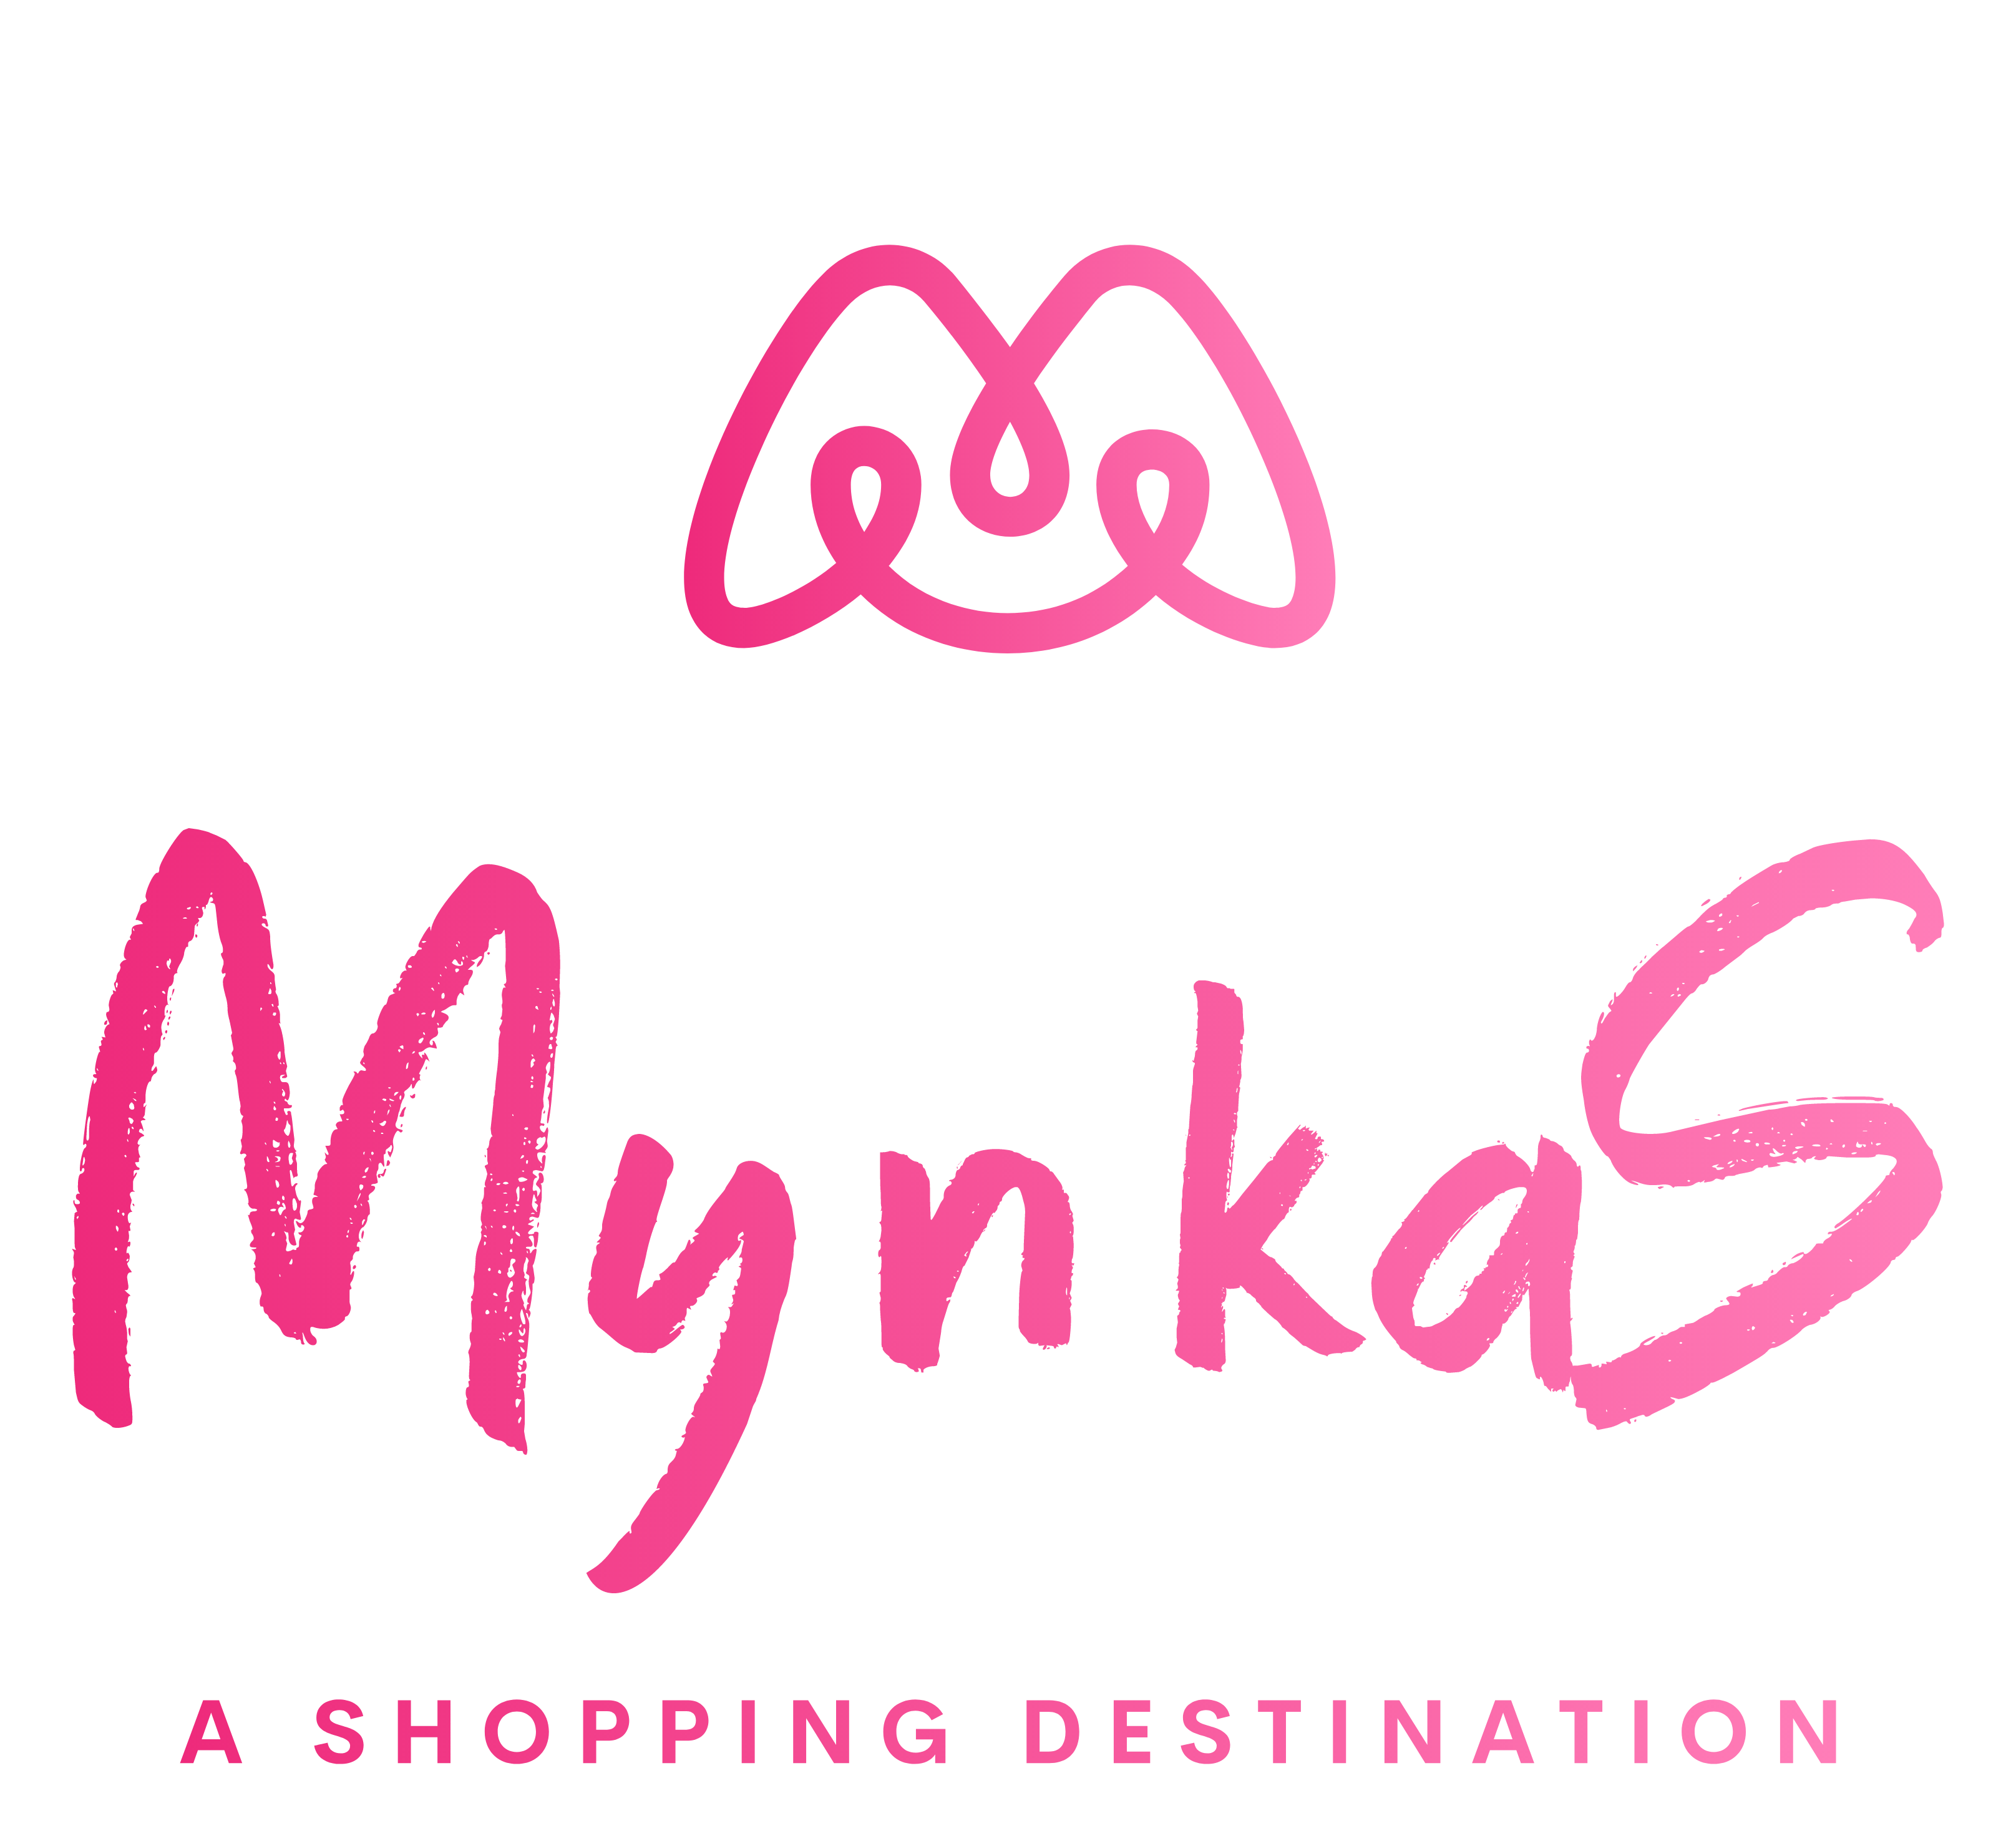 Mynkas.com